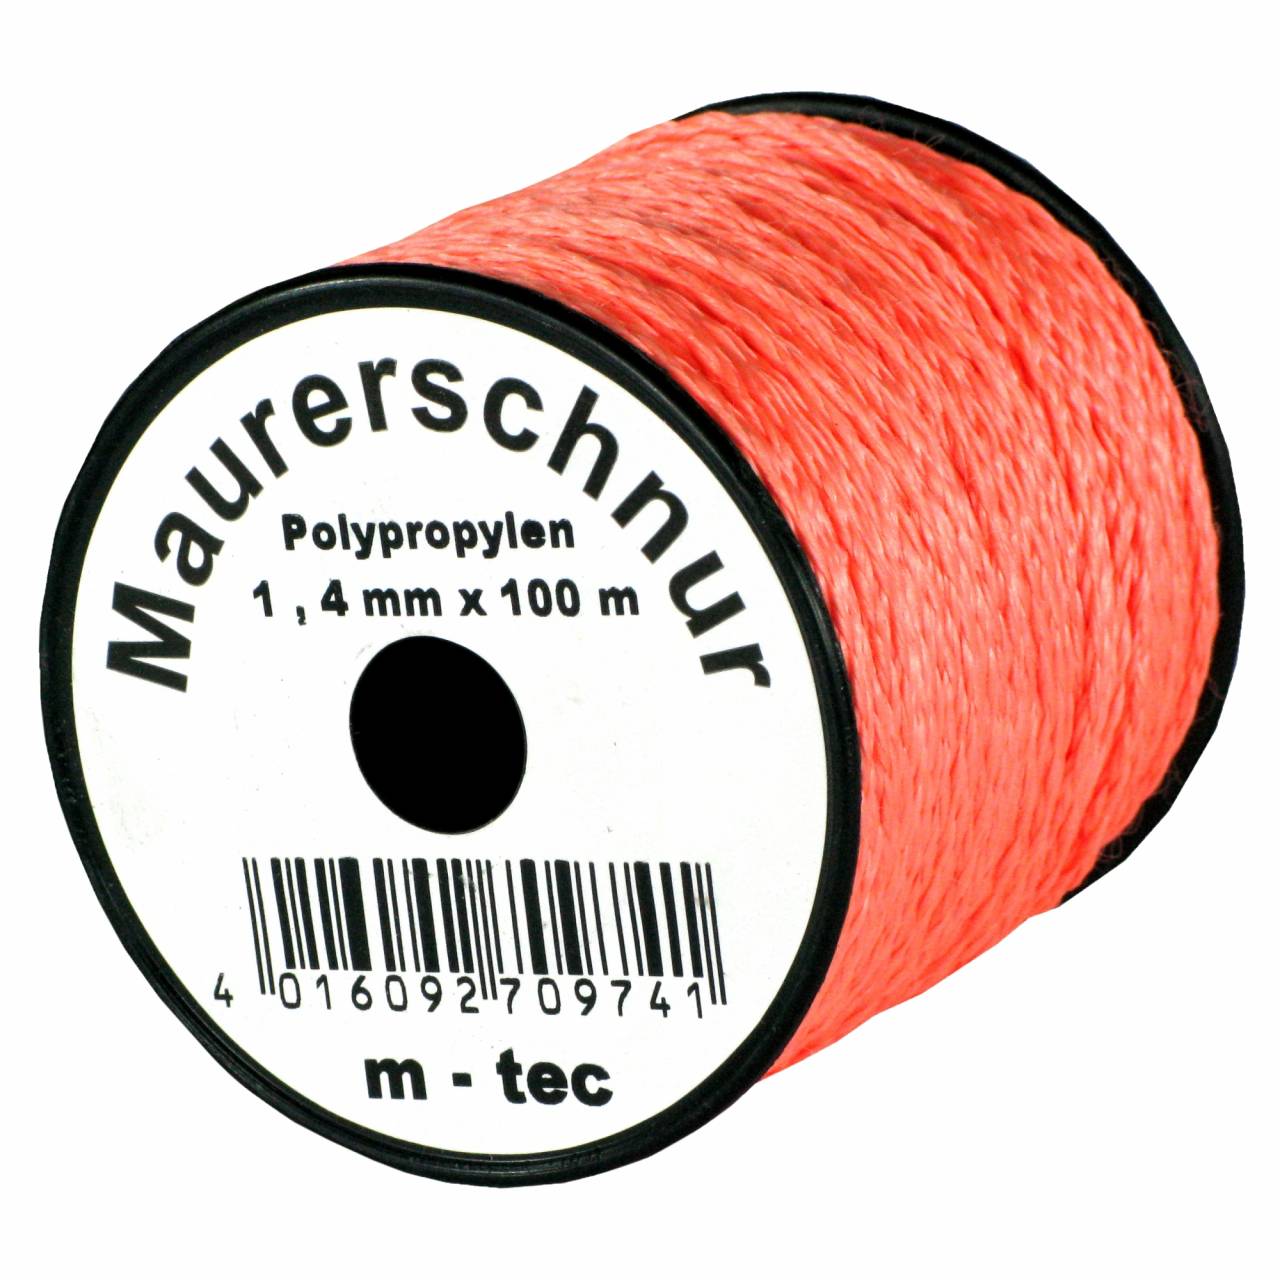 Lot-Maurerschnur 100 m x Ø 1,4 mm Orange-Fluoreszierend